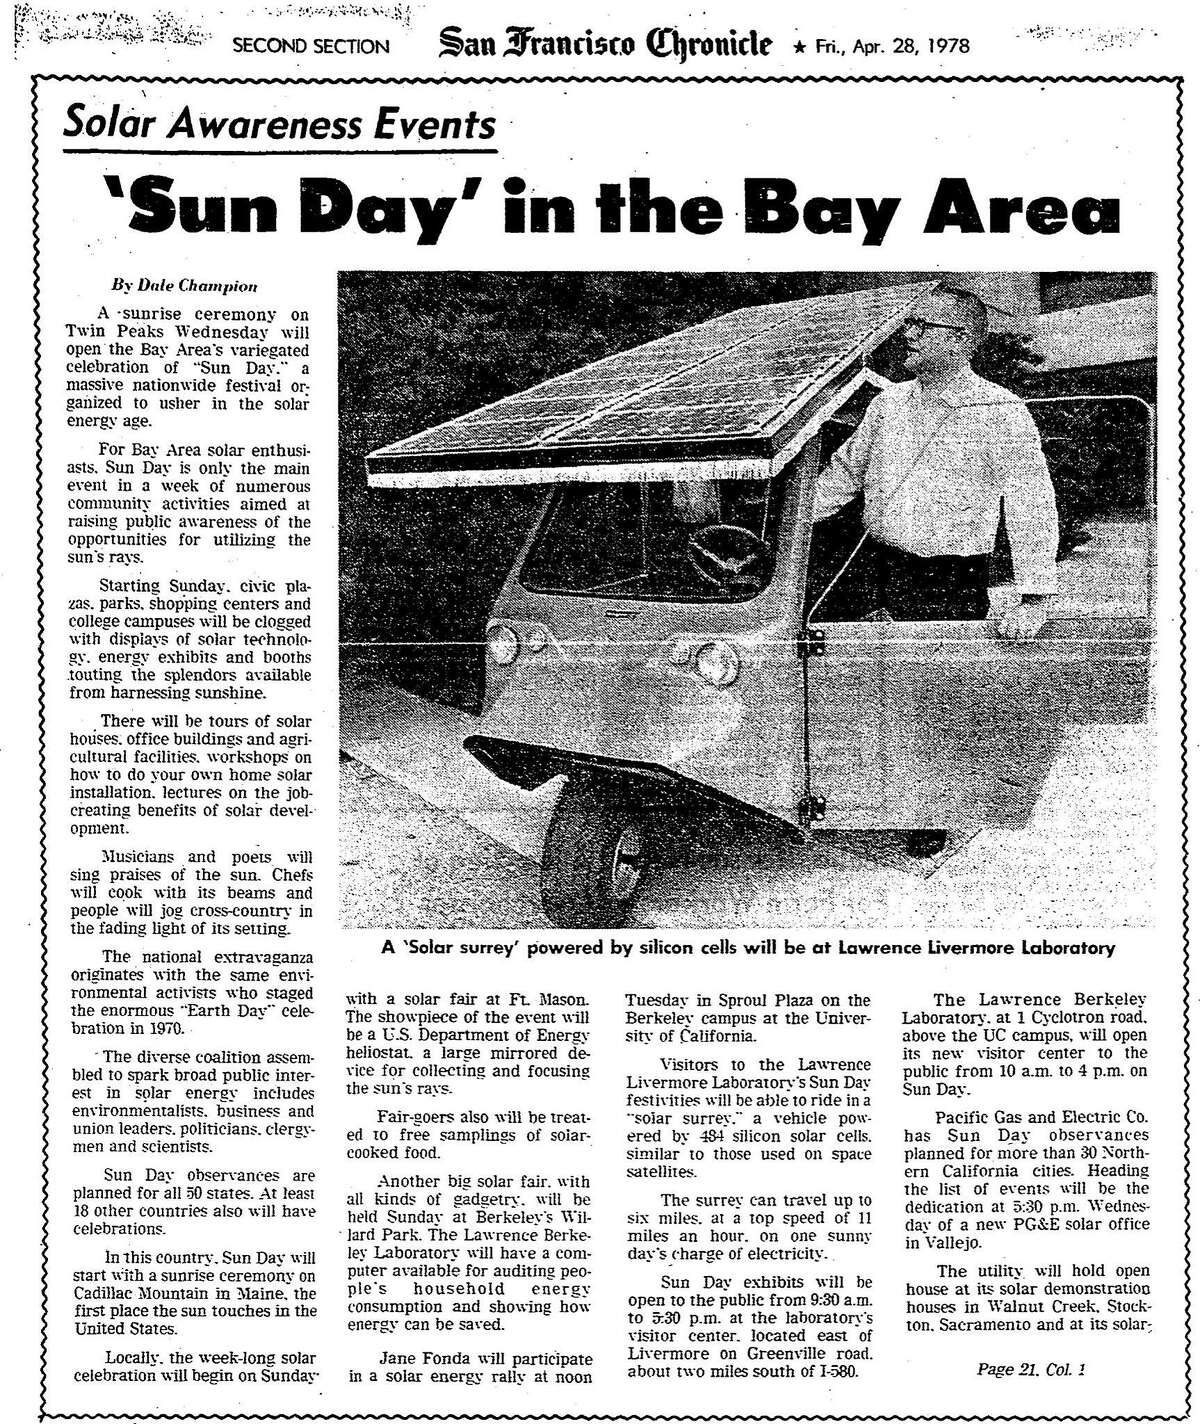 1978年4月28日《纪事报》关于即将到来的星期日庆祝活动的文章。活动包括演讲和太阳能示范